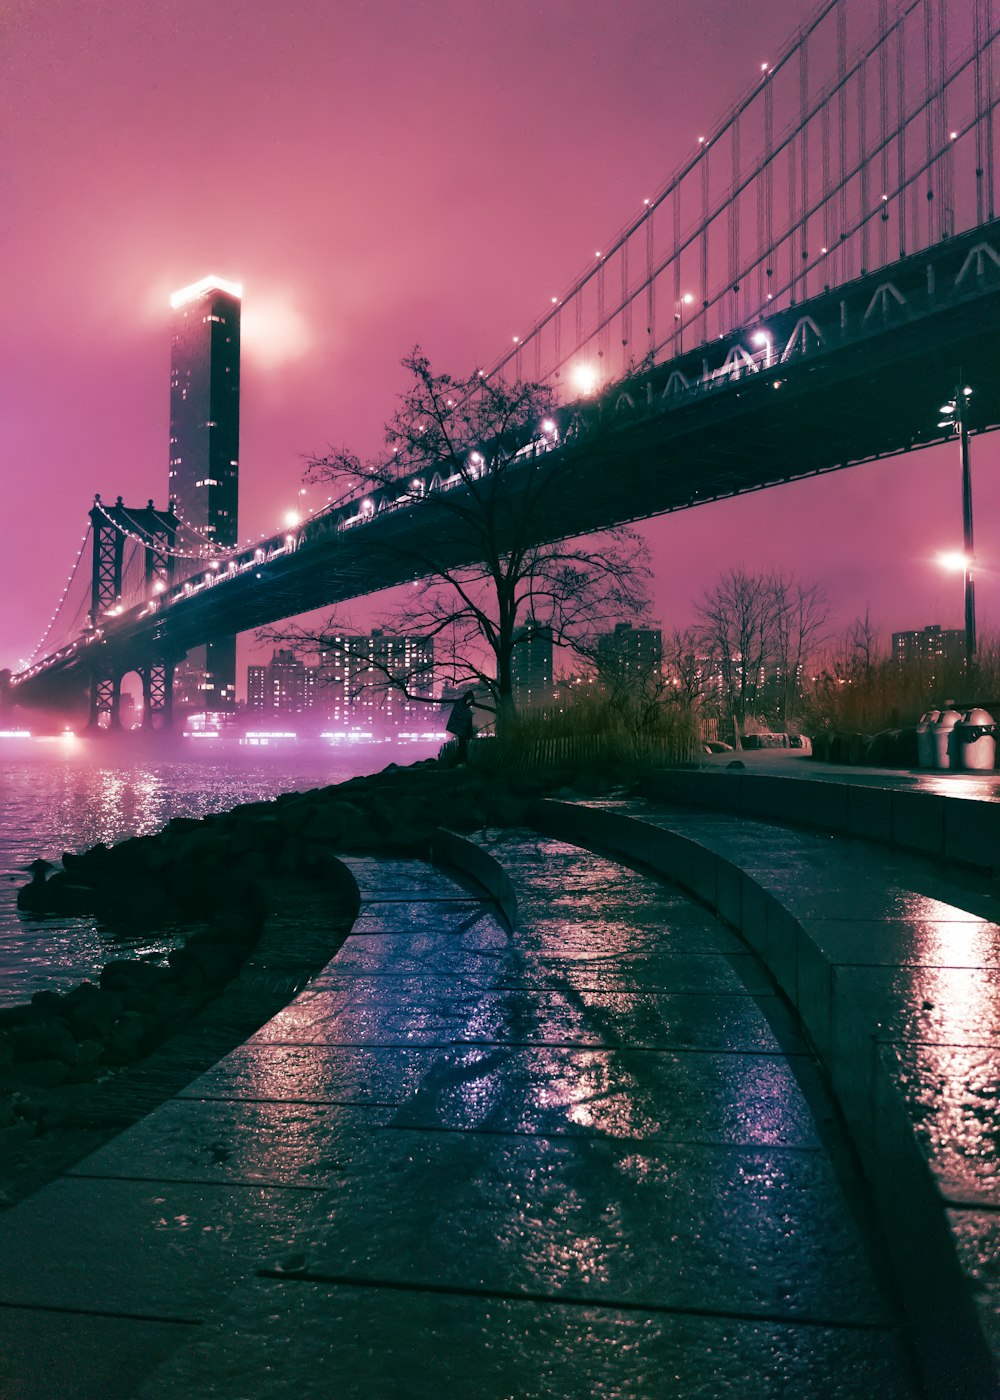 ponte sobre a água durante a noite